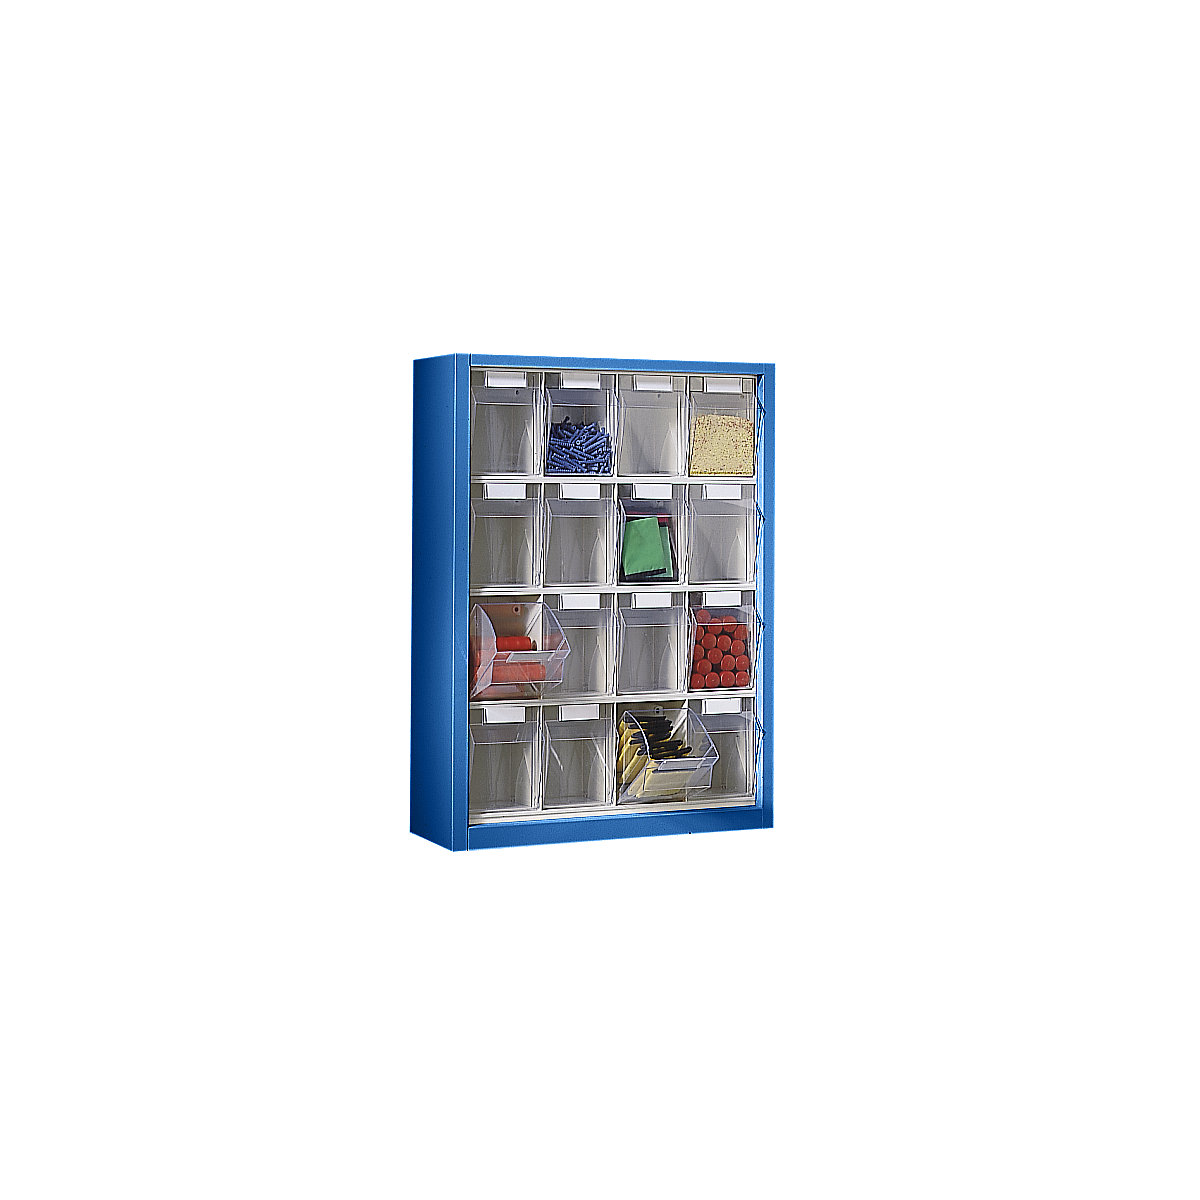 Caixa articulada, armário suspenso, AxLxP 910 x 665 x 250 mm, com 16 caixas, cor do corpo azul genciana-2